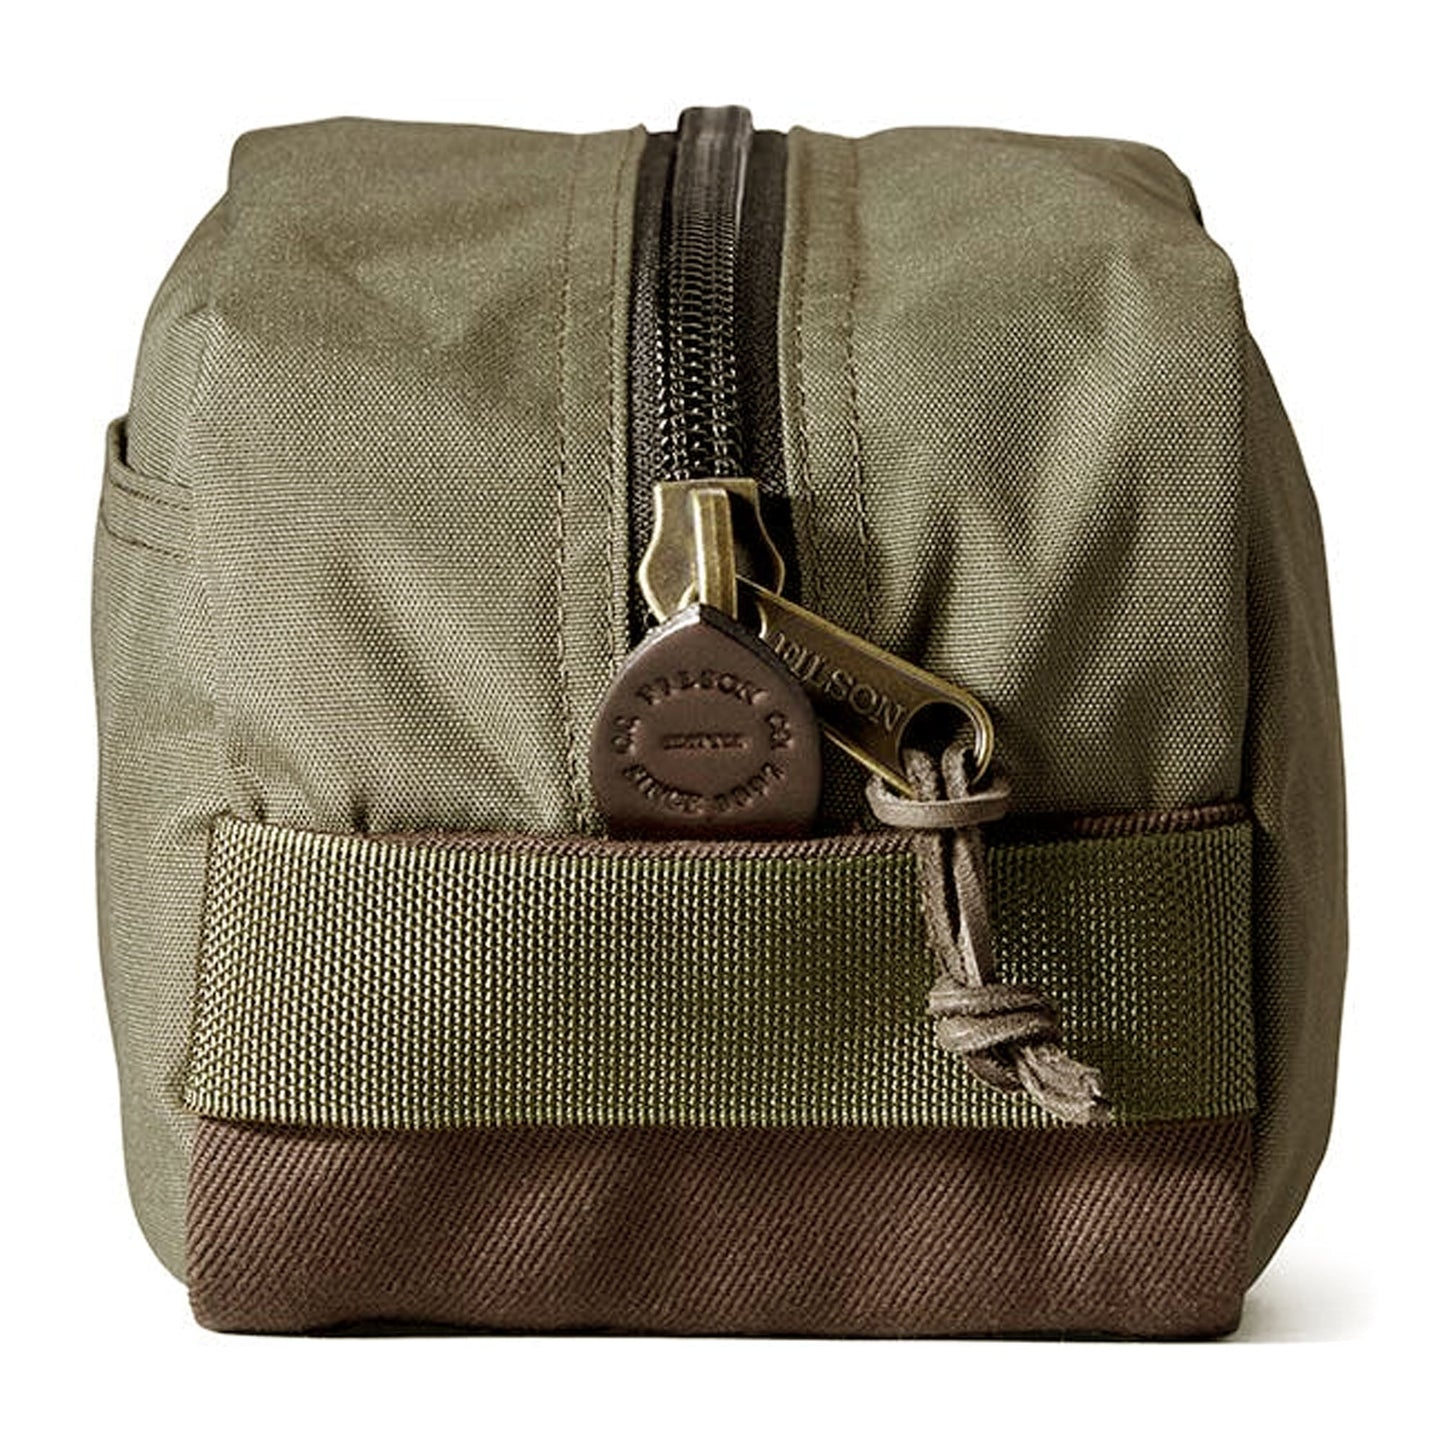 Filson - Travel Pack, Otter Green, Nylon